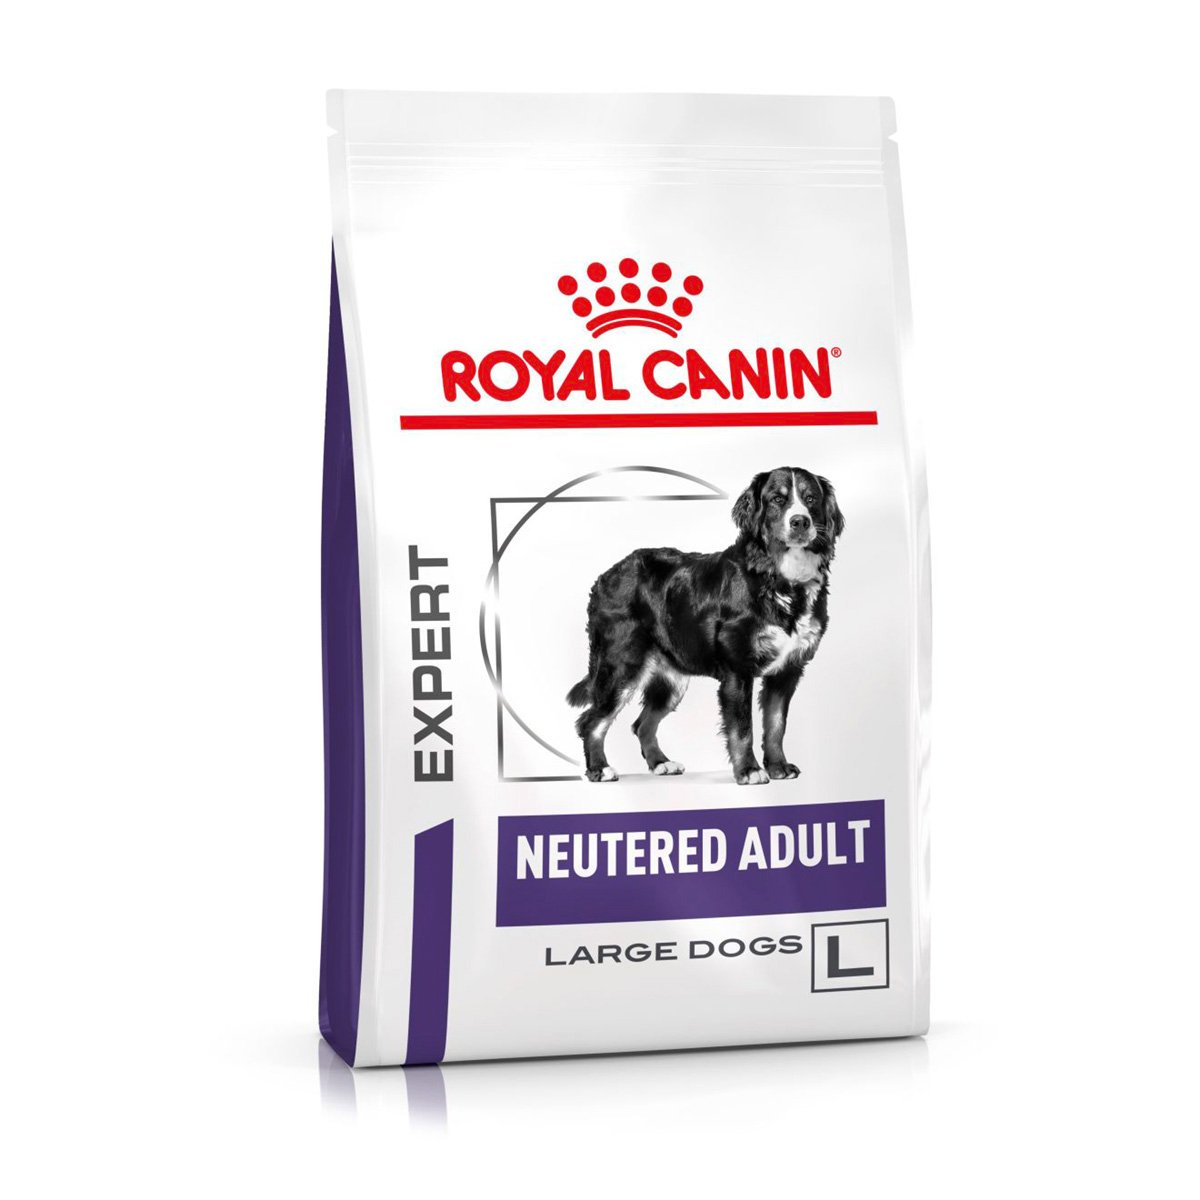 ROYAL CANIN® Expert NEUTERED ADULT LARGE DOGS Trockenfutter für Hunde 12kg von Royal Canin